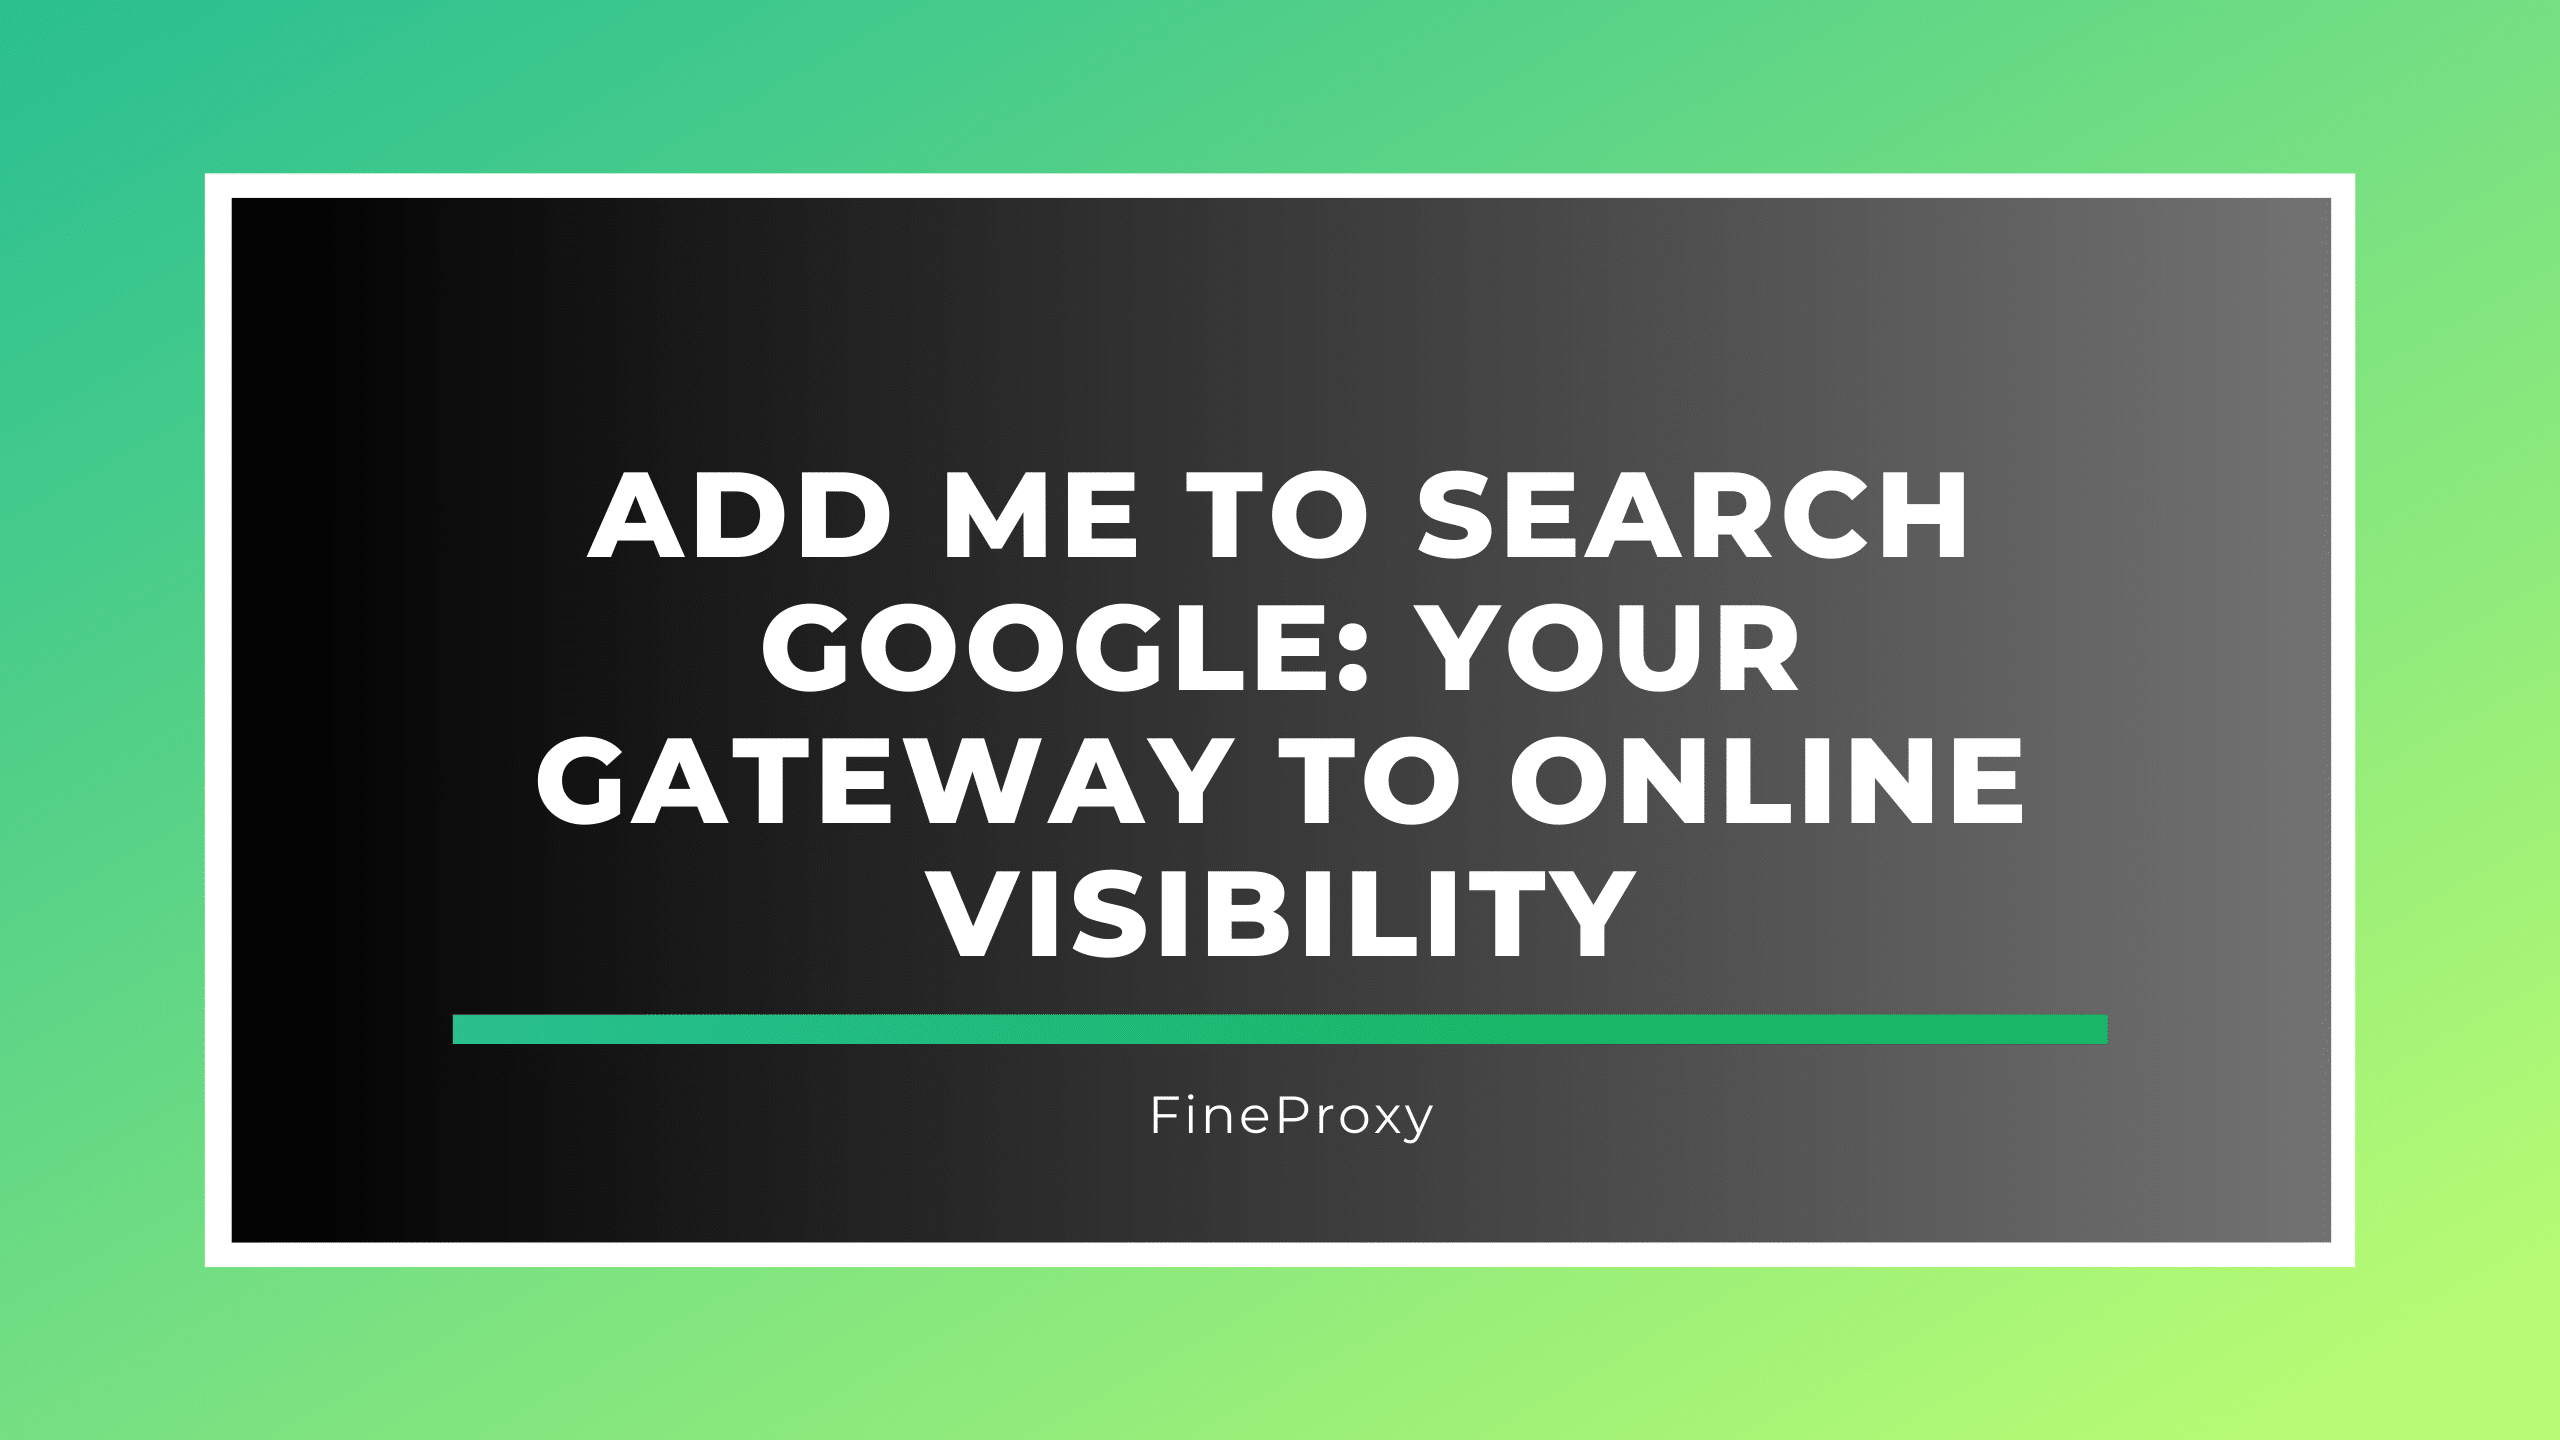 Adicione-me à pesquisa do Google: sua porta de entrada para visibilidade online